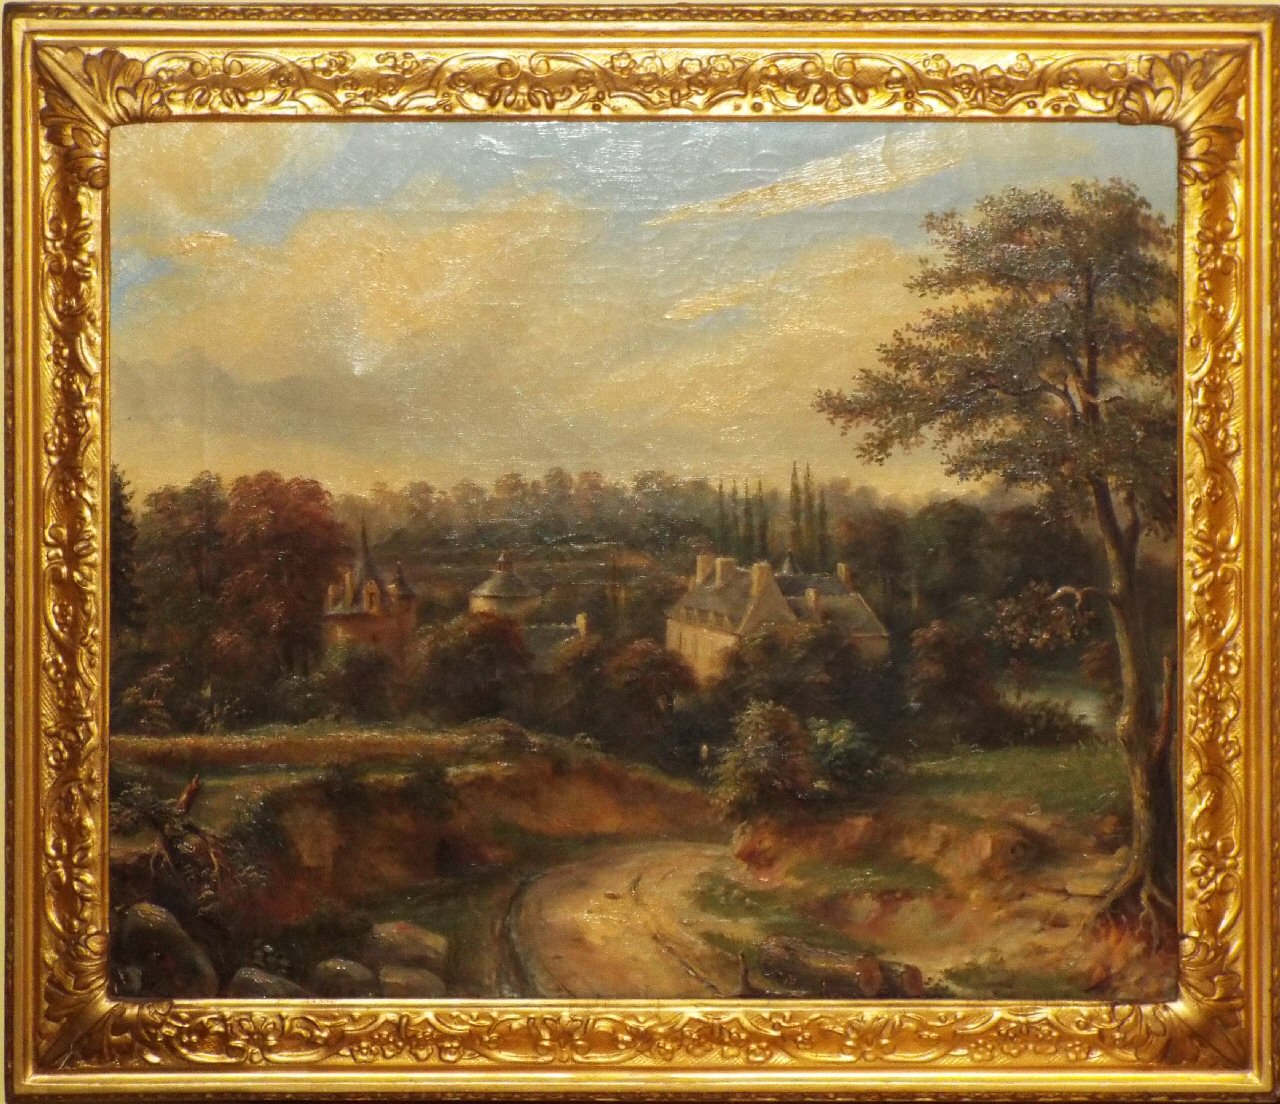 Oil on canvas - Chateau de la Conninais near Dinan